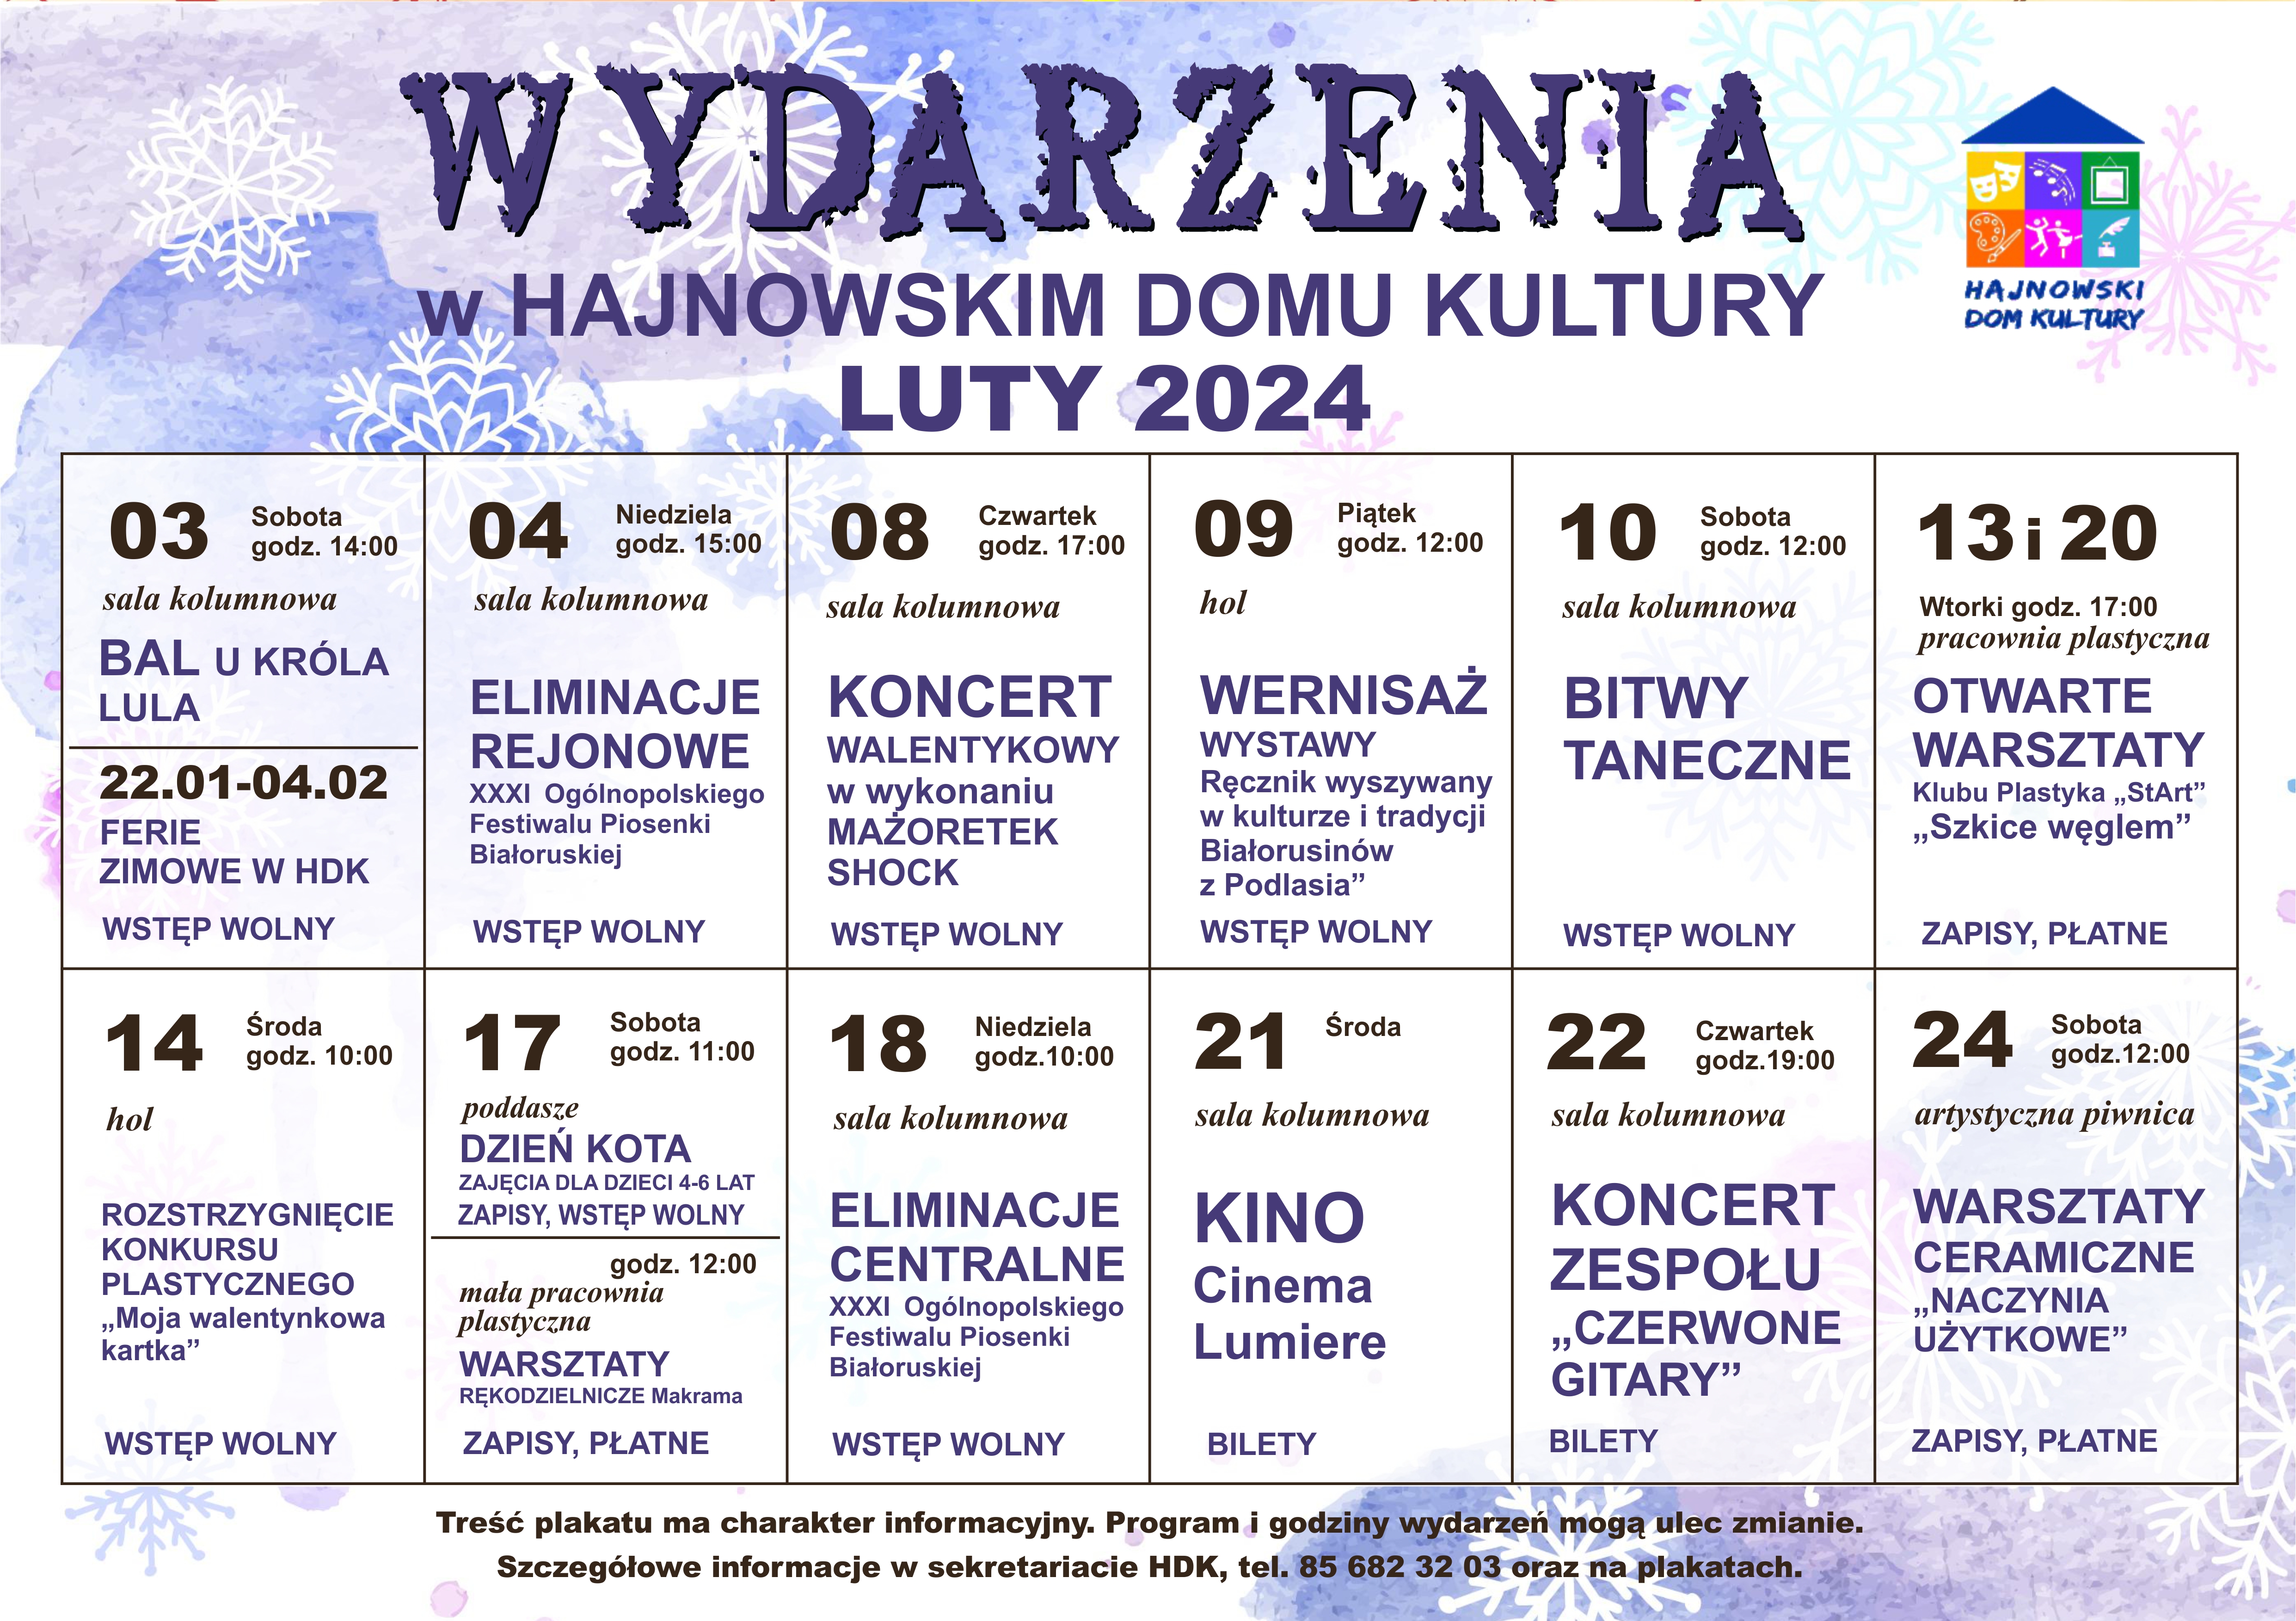 Plakat informujący o wydarzeniach w HDK w miesiącu luty 2024